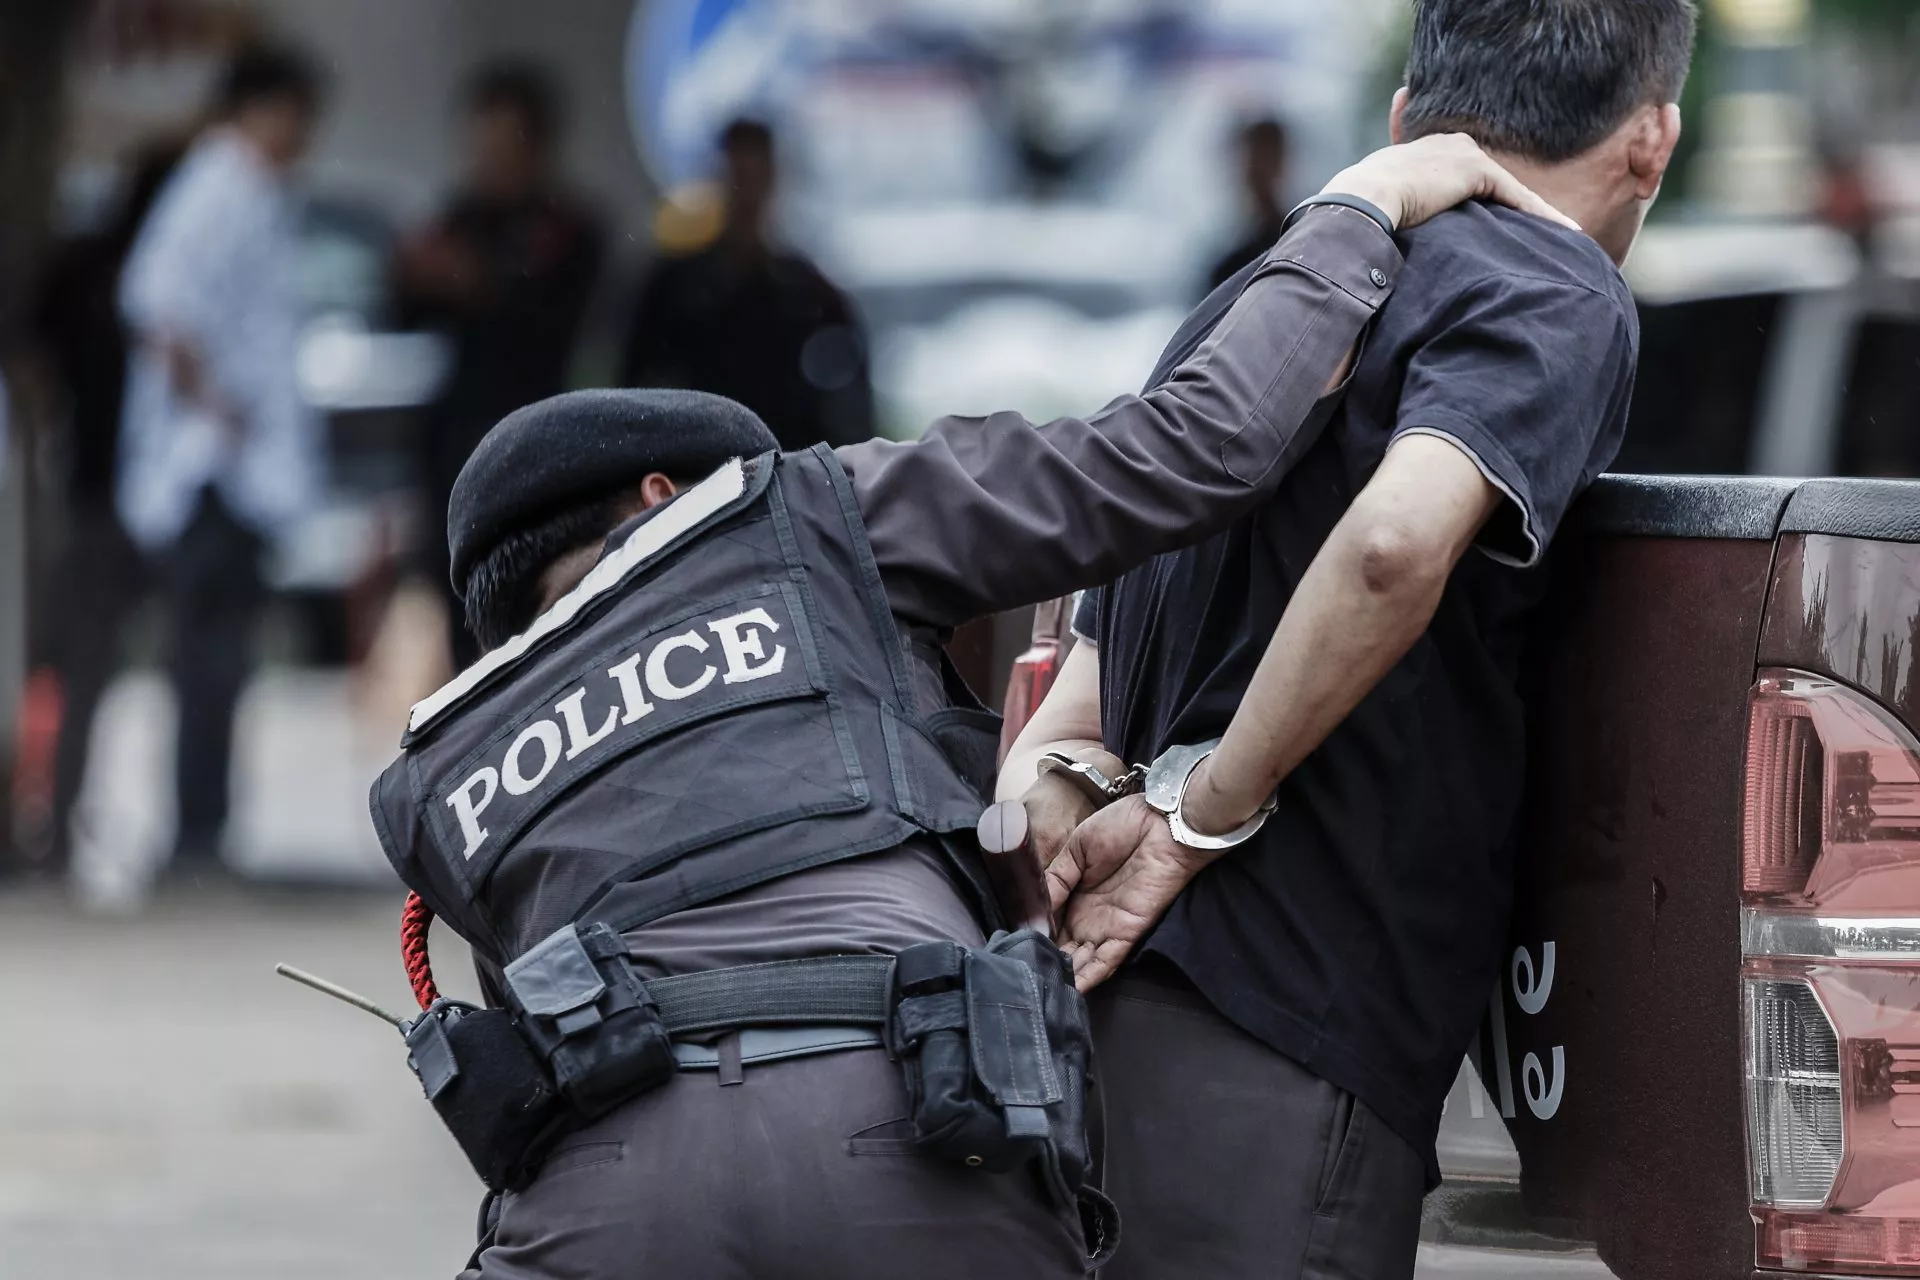 Politie China arresteren meer dan 1.000 personen in crypto-witwasschandaal